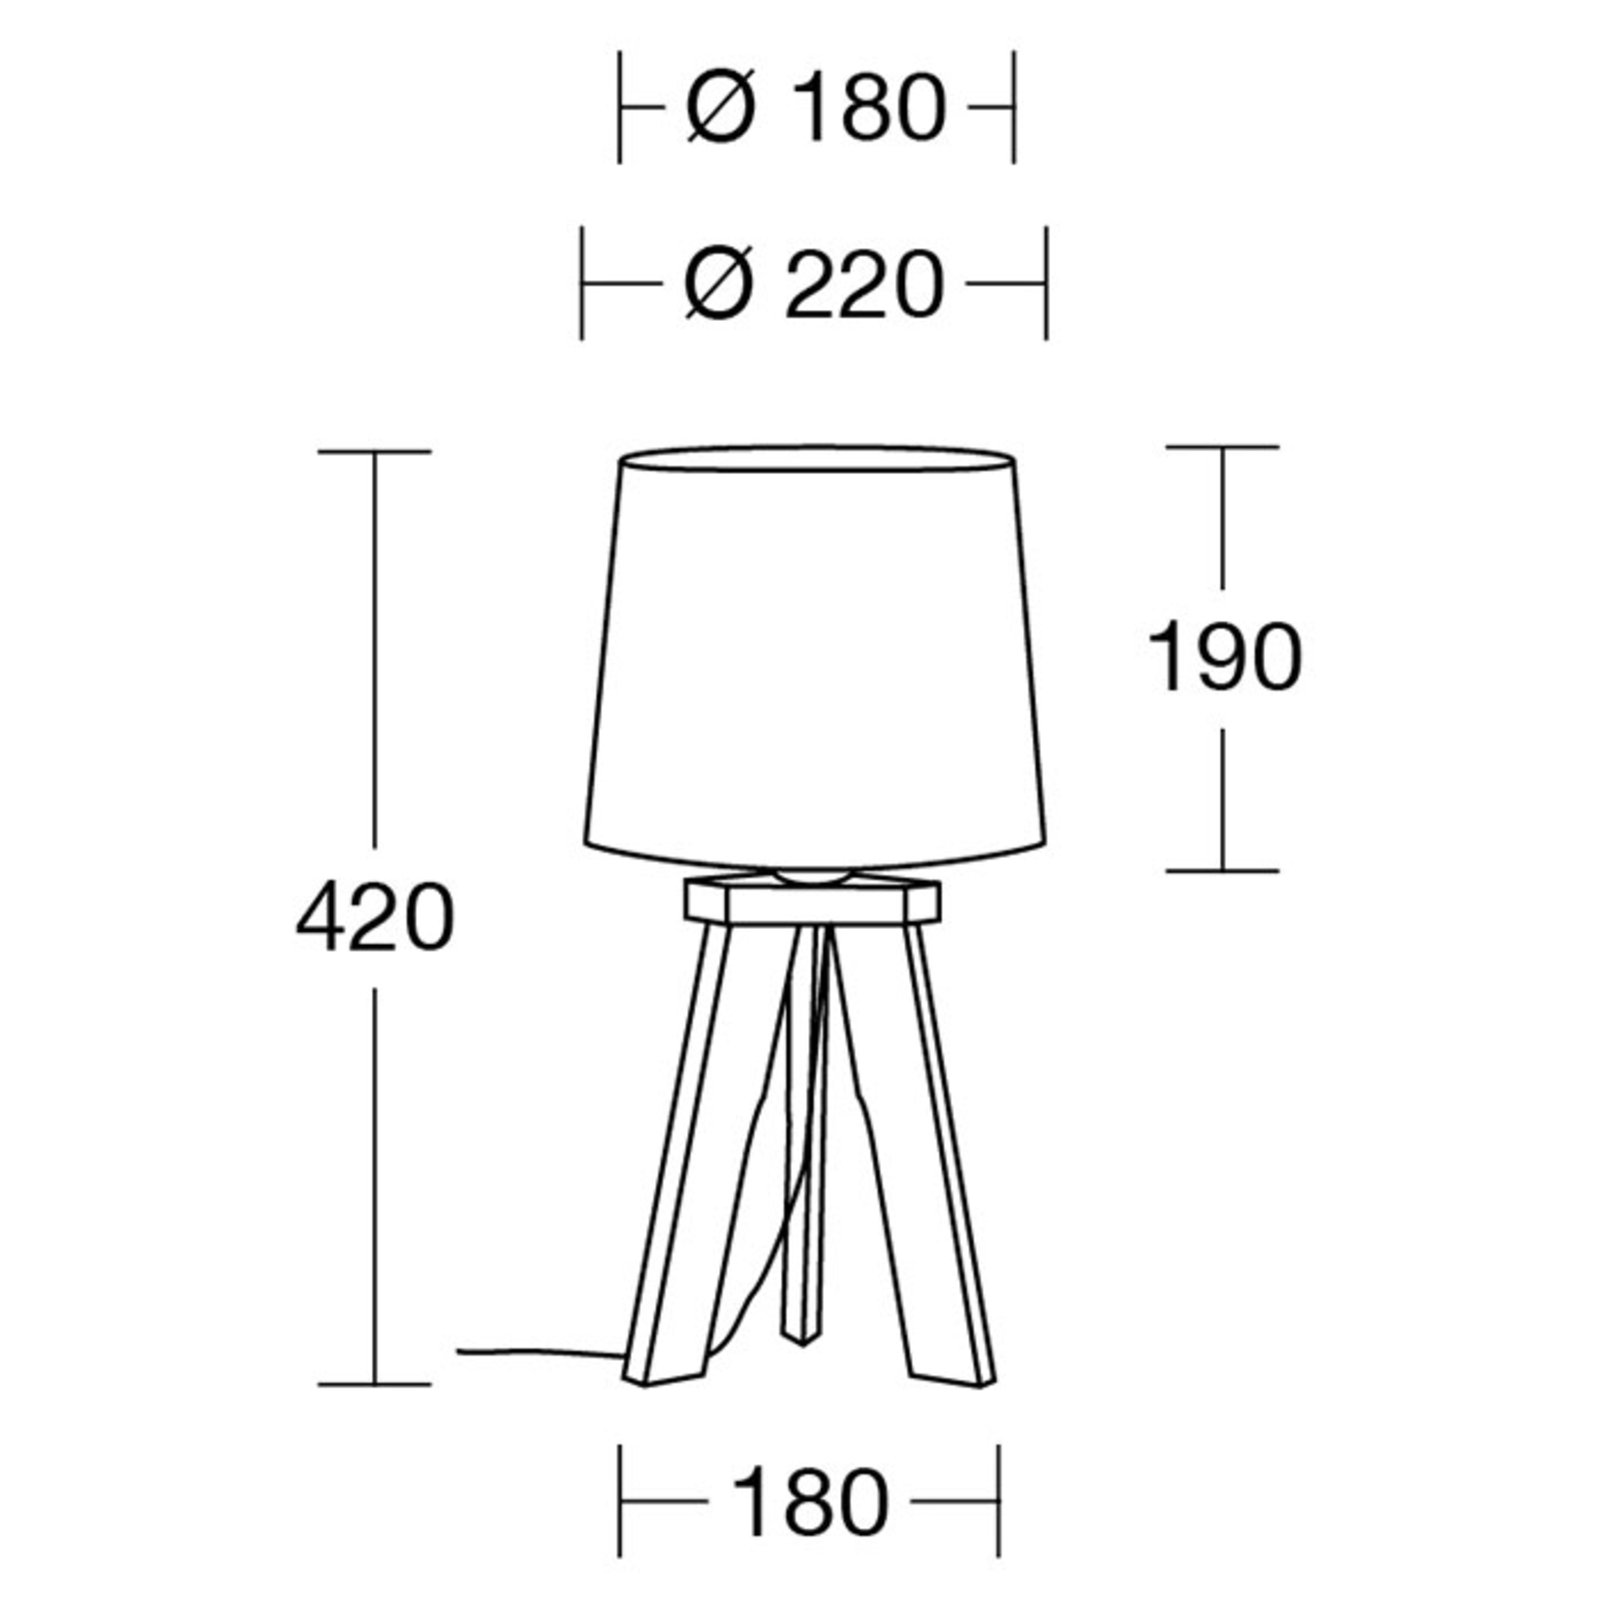 HerzBlut Tre table lamp, natural oak, white, 42 cm